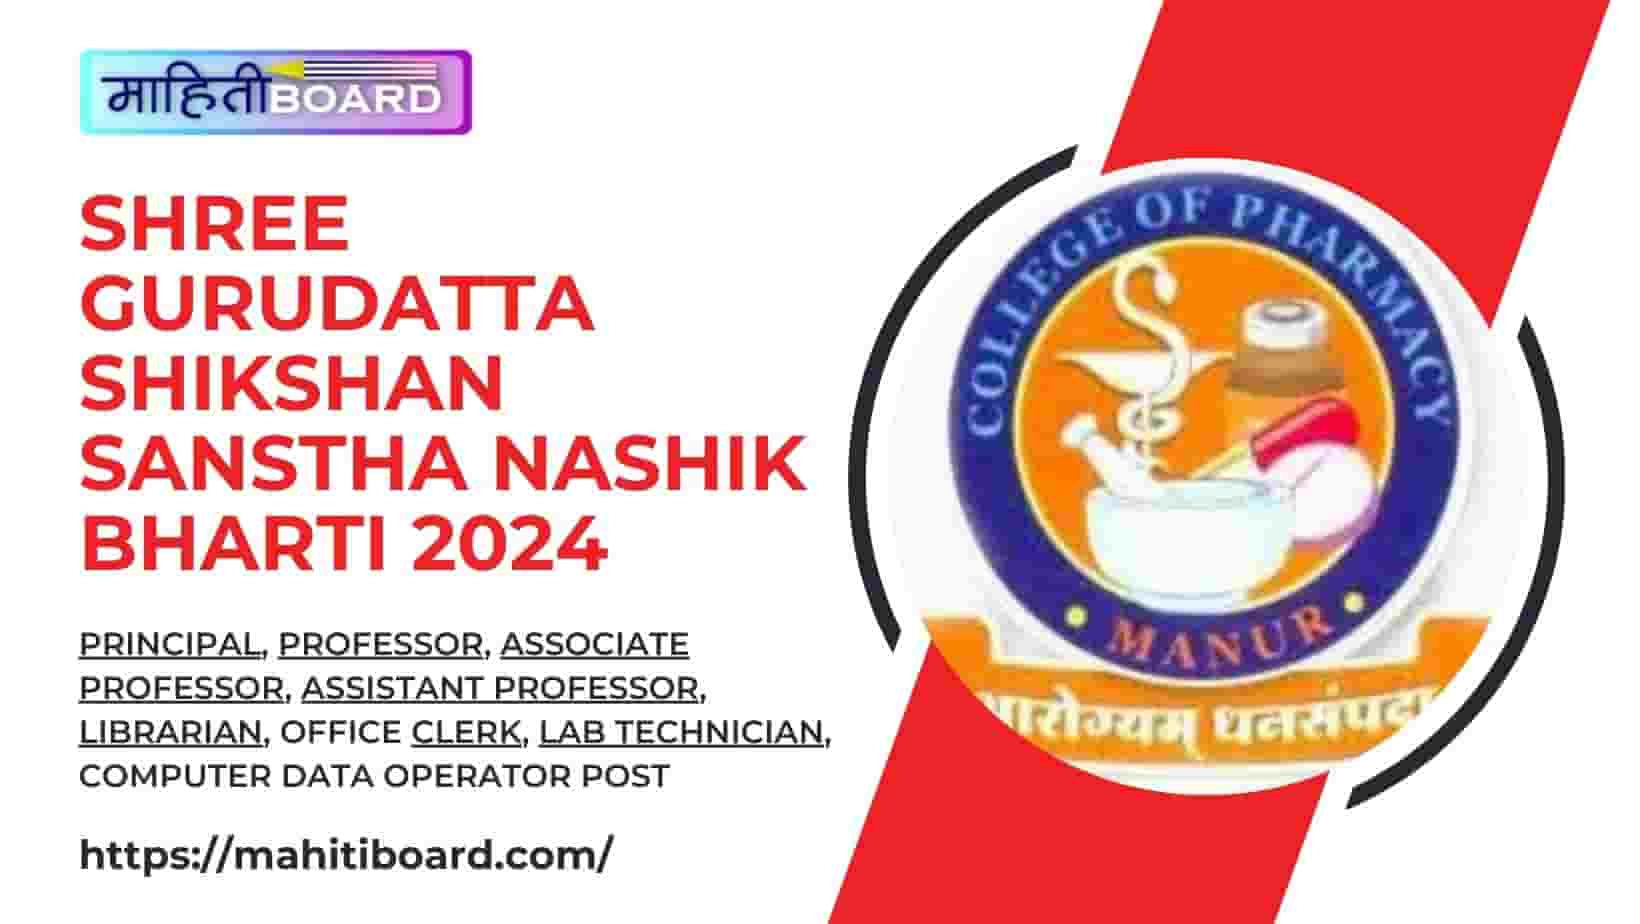 Shree Gurudatta Shikshan Sanstha Nashik Bharti 2024